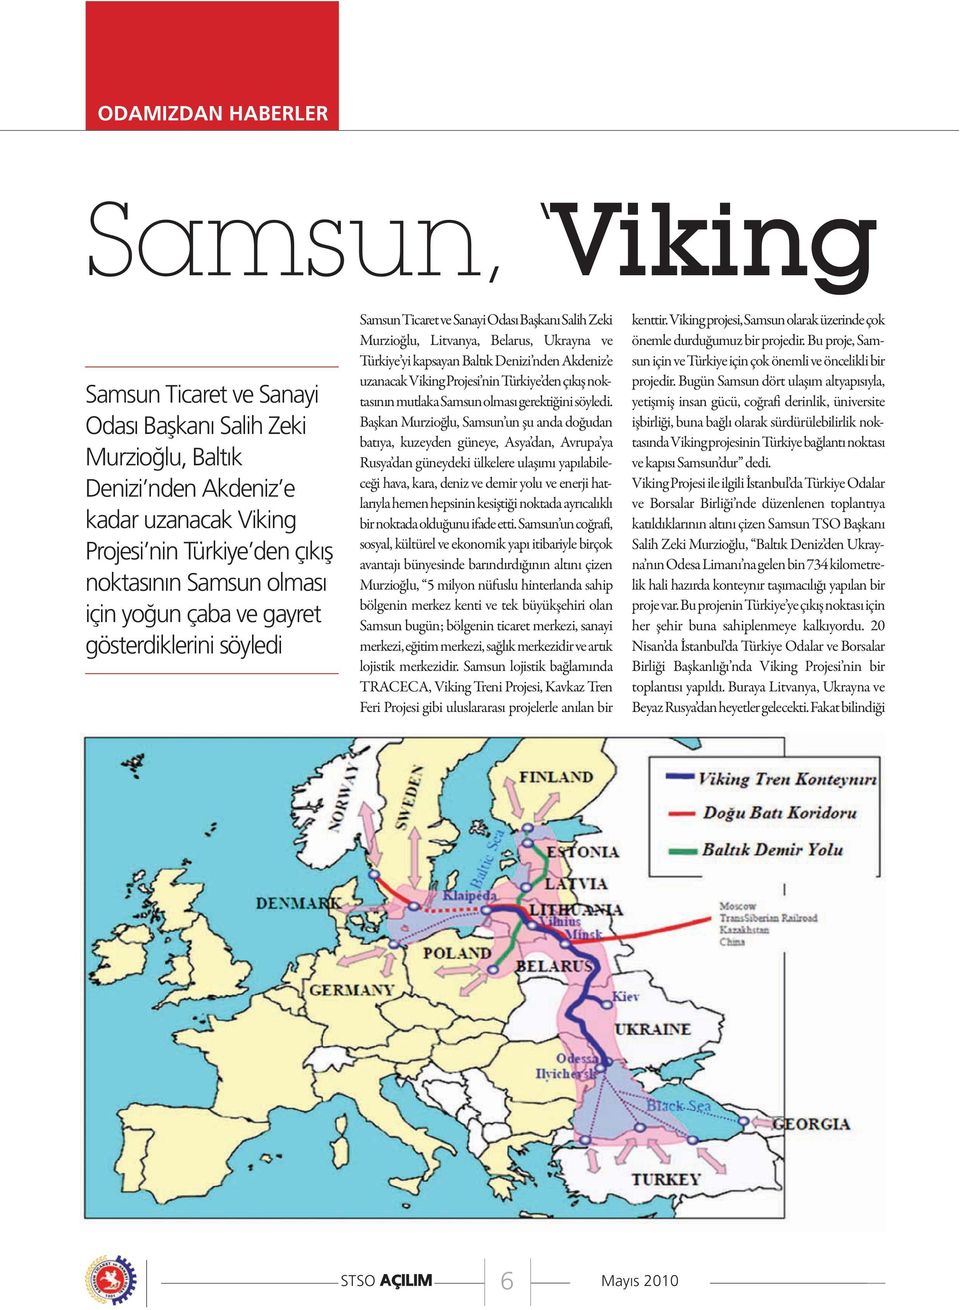 uzanacak Viking Projesi nin Türkiye den çıkış noktasının mutlaka Samsun olması gerektiğini söyledi.